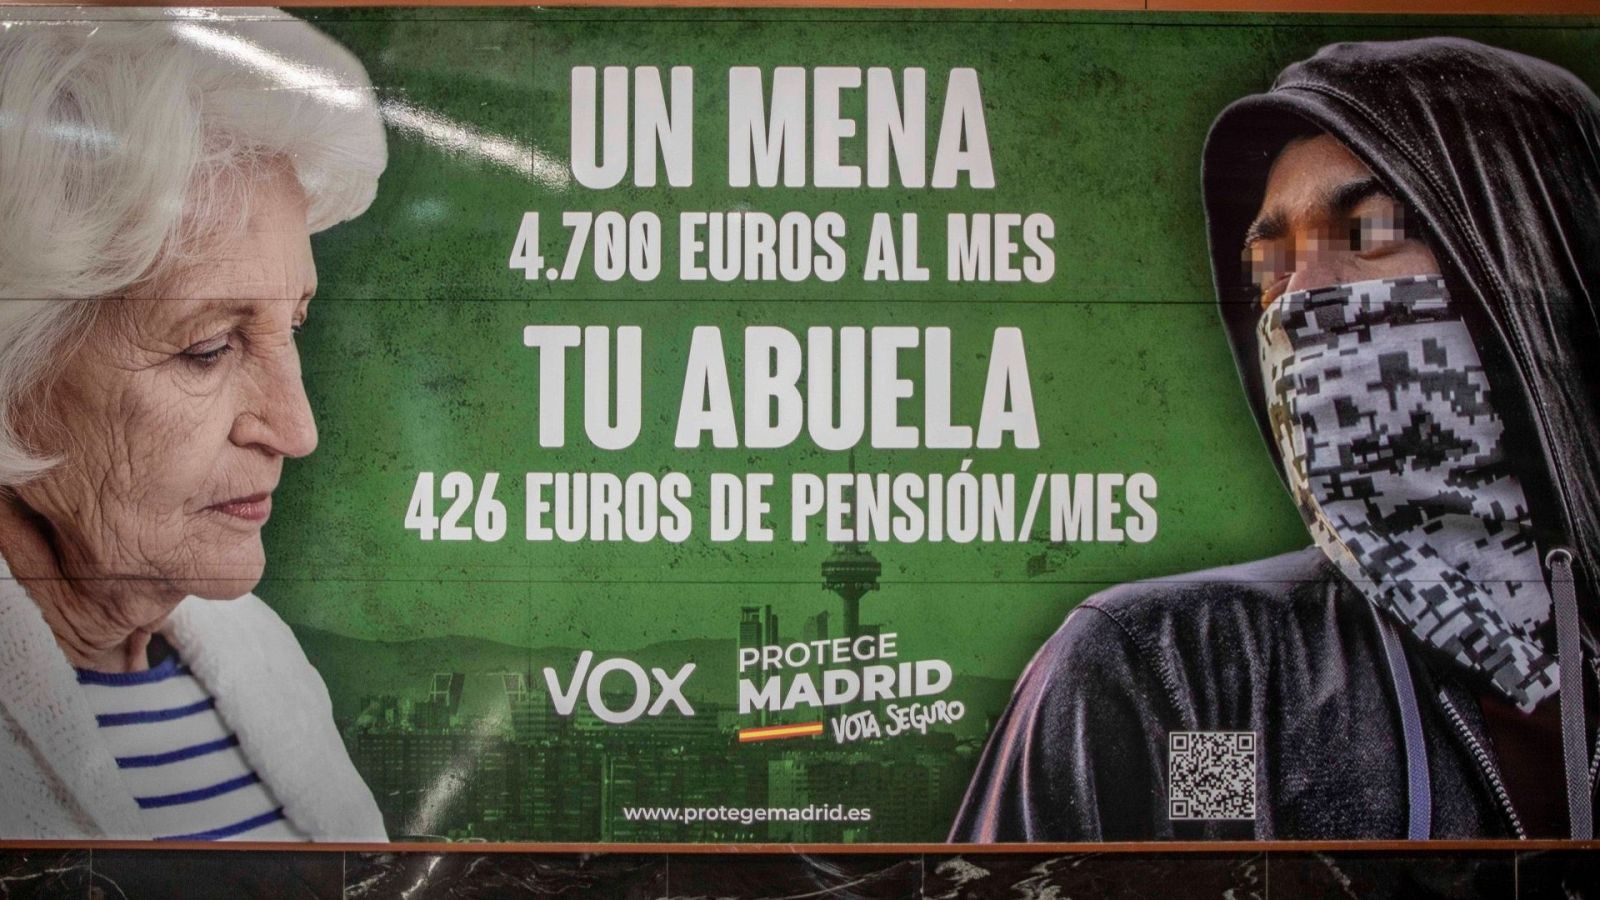 El cartel con los 'menas' de Vox se debate en el Congreso de los Diputados